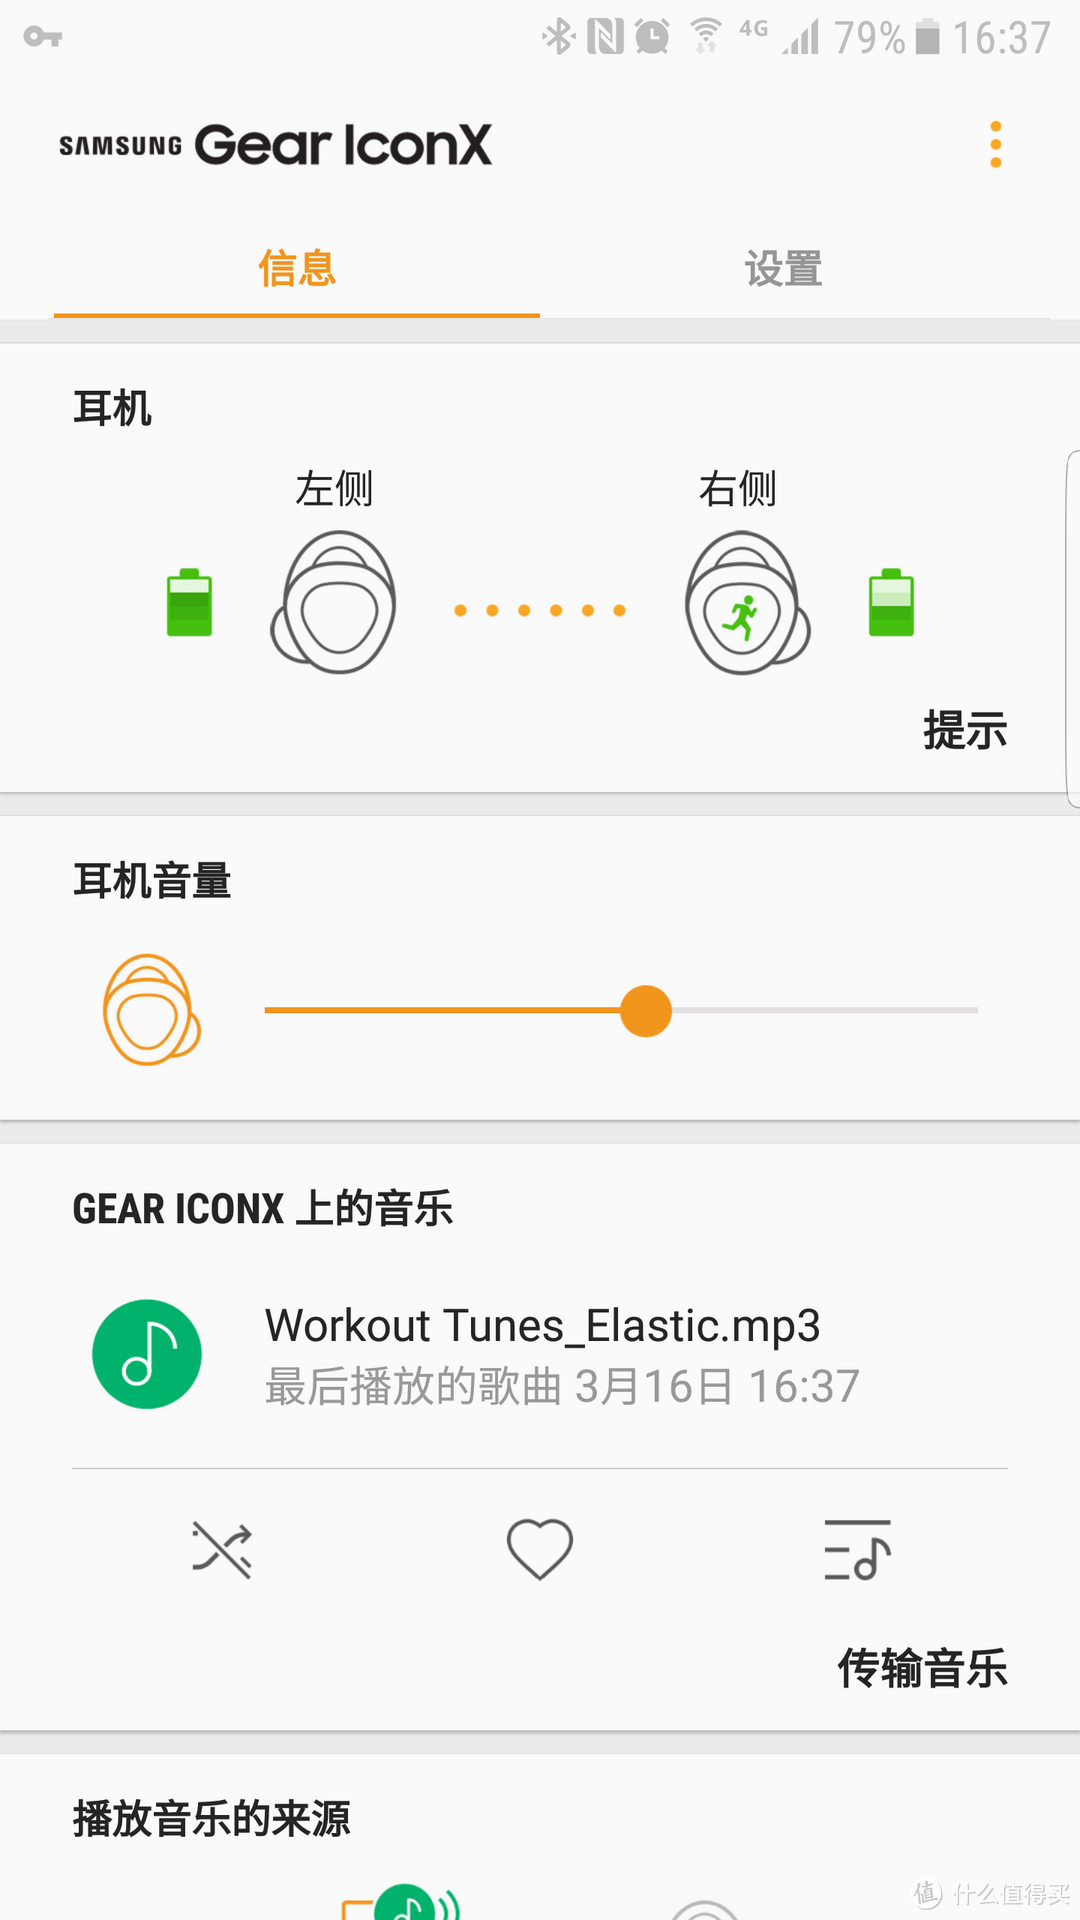 买蓝牙耳机送随身听——三星IconX 2018开箱&日常使用评测#剁主计划-天津#